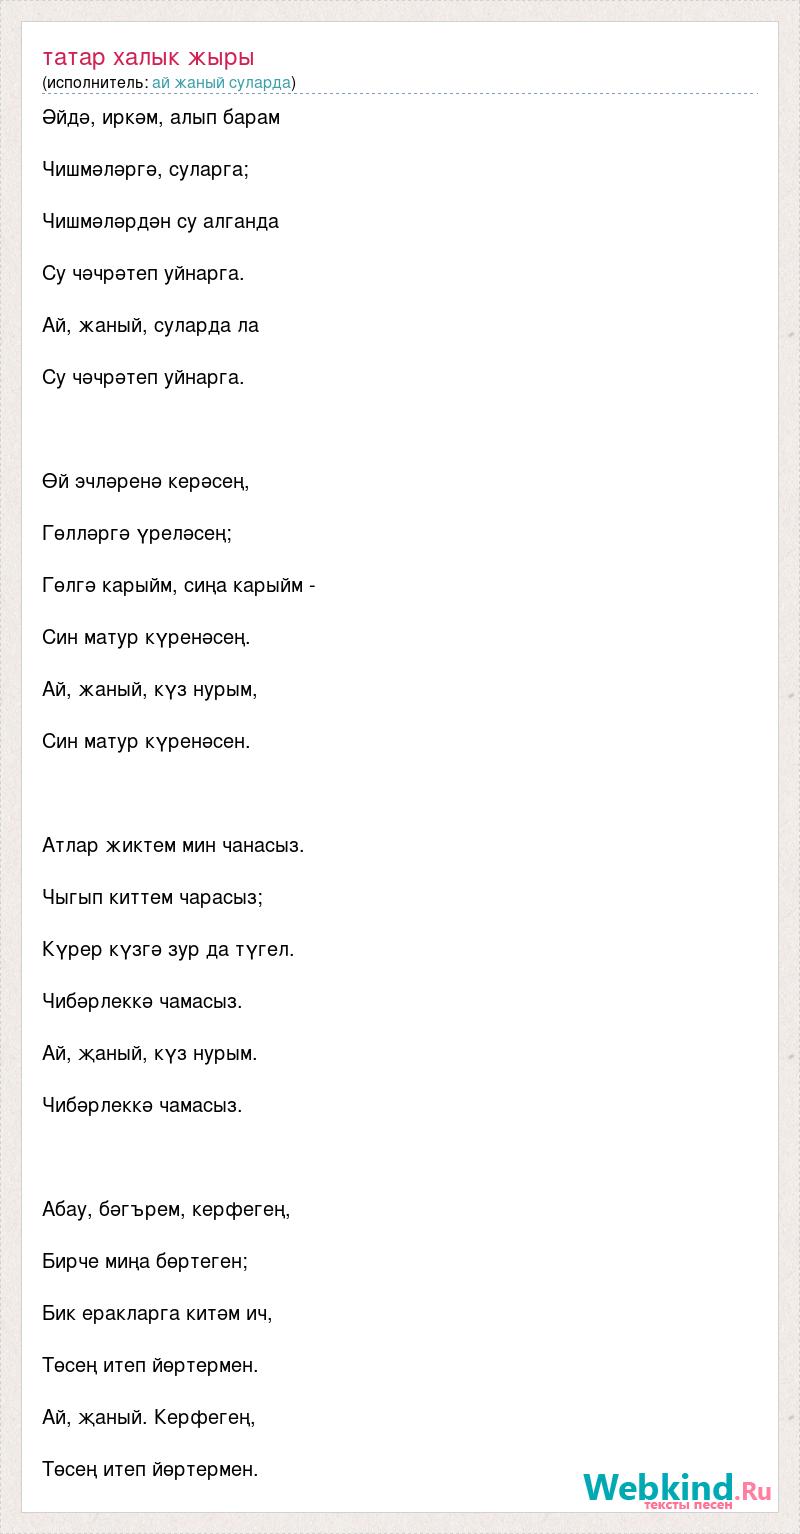 Татарские песни дочери